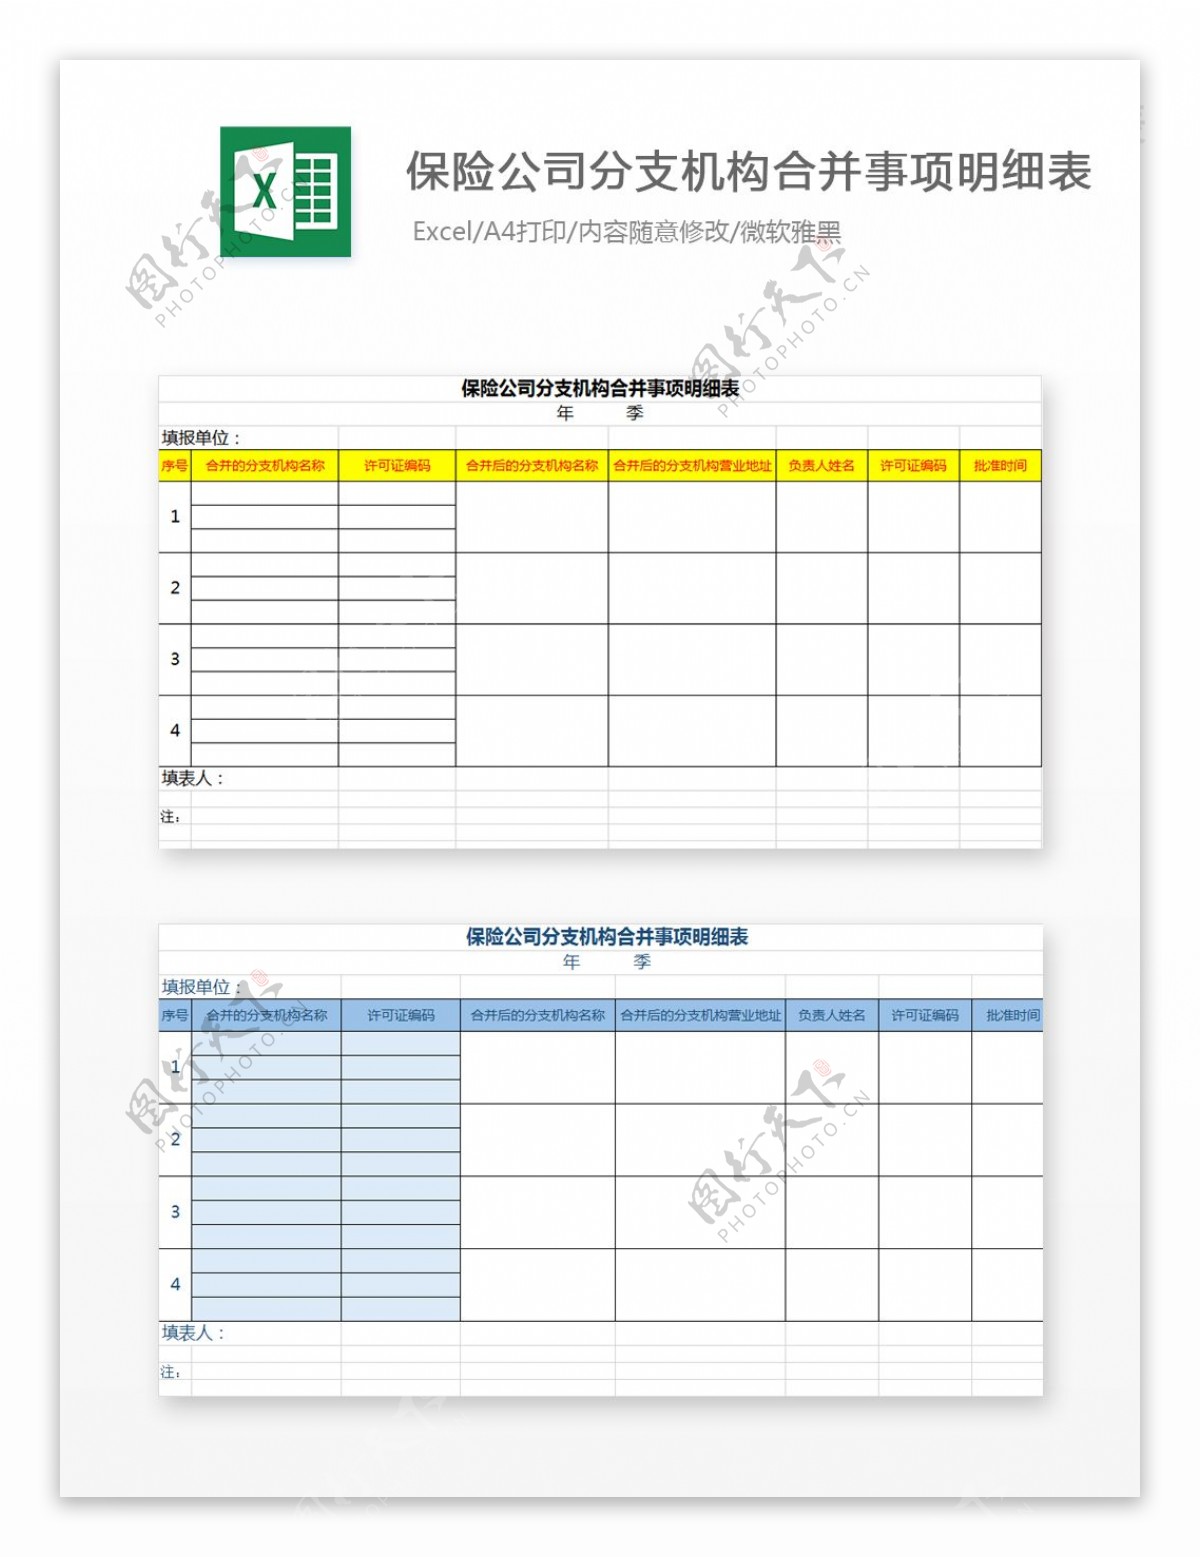 保险公司分支机构合并事项Excel模板2